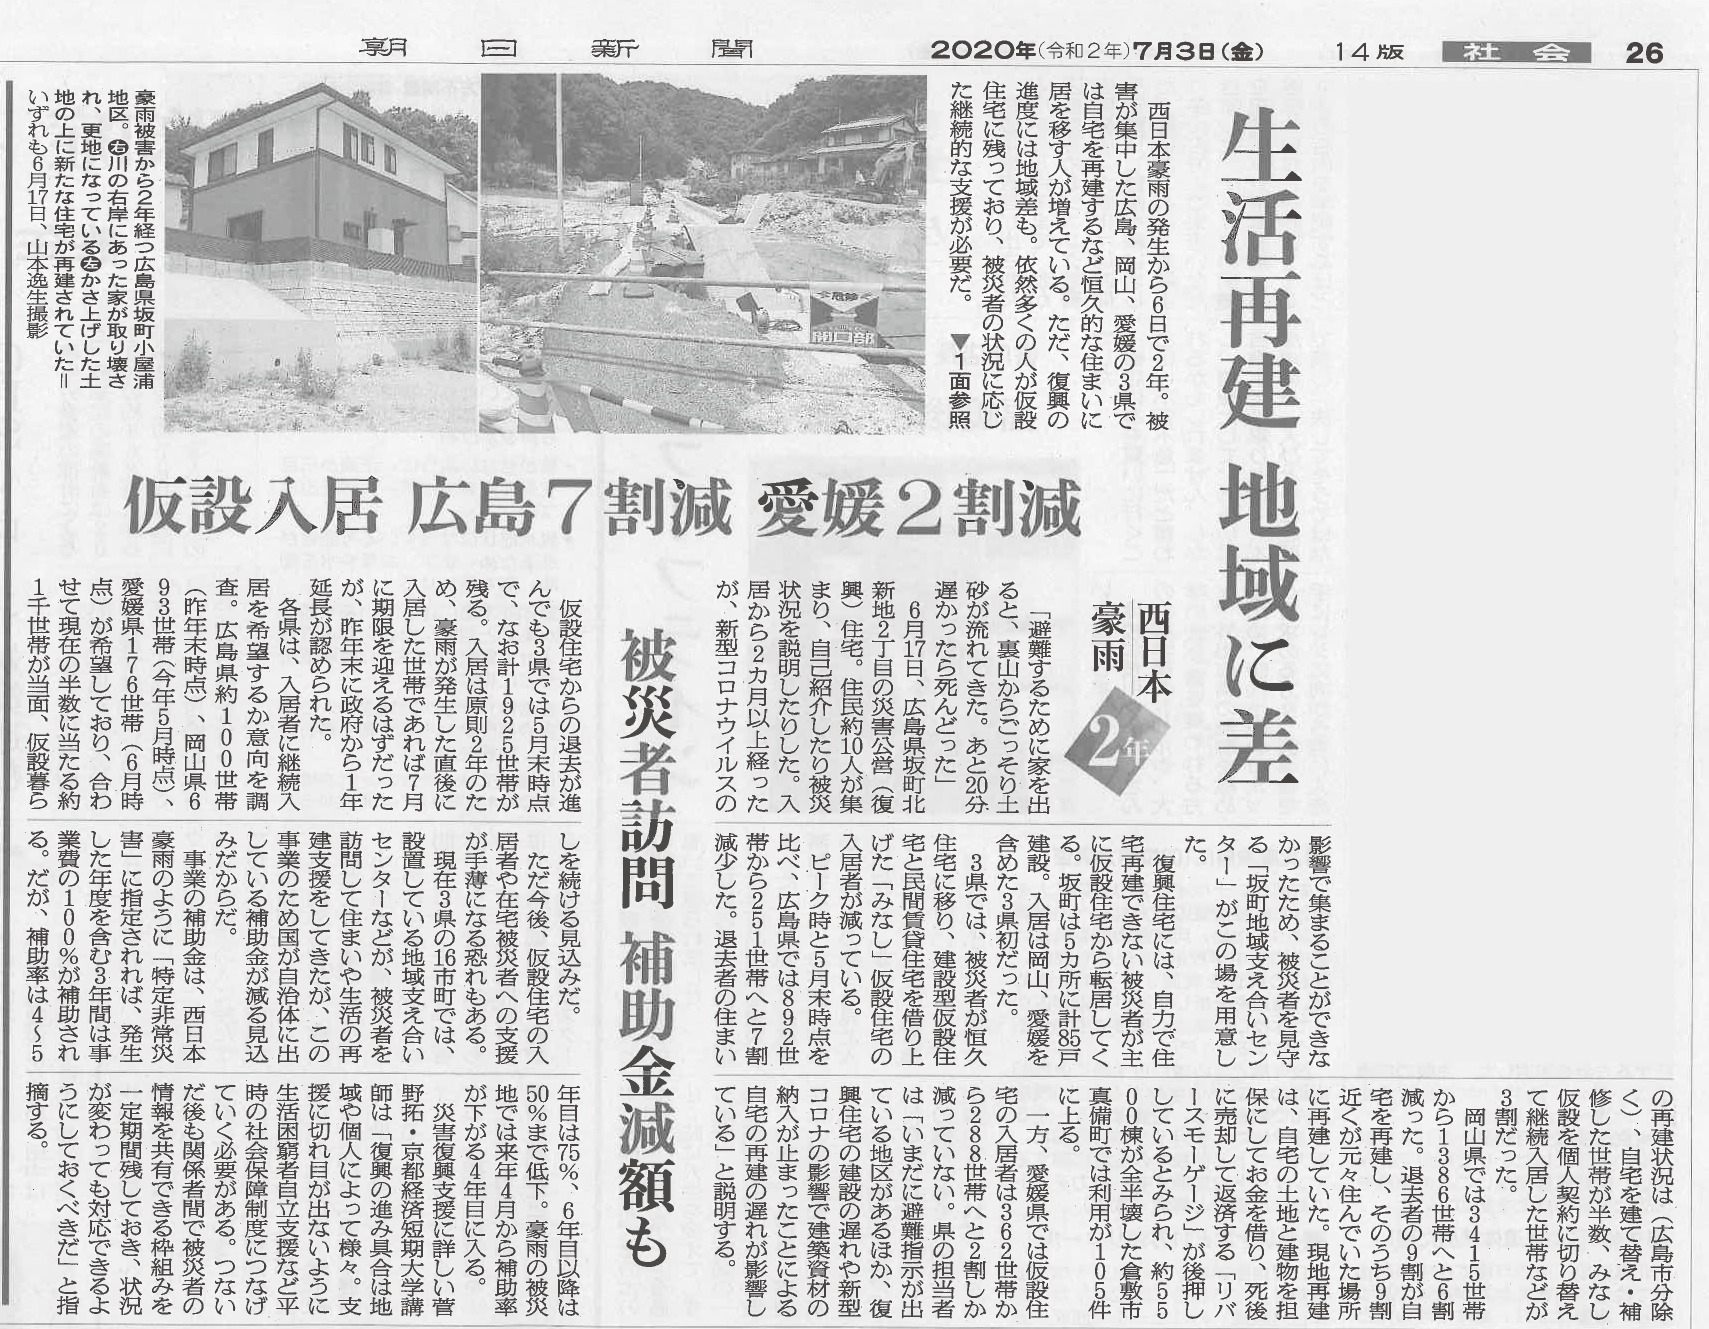 菅野先生のコメントが朝日新聞に掲載されました 京都経済短期大学